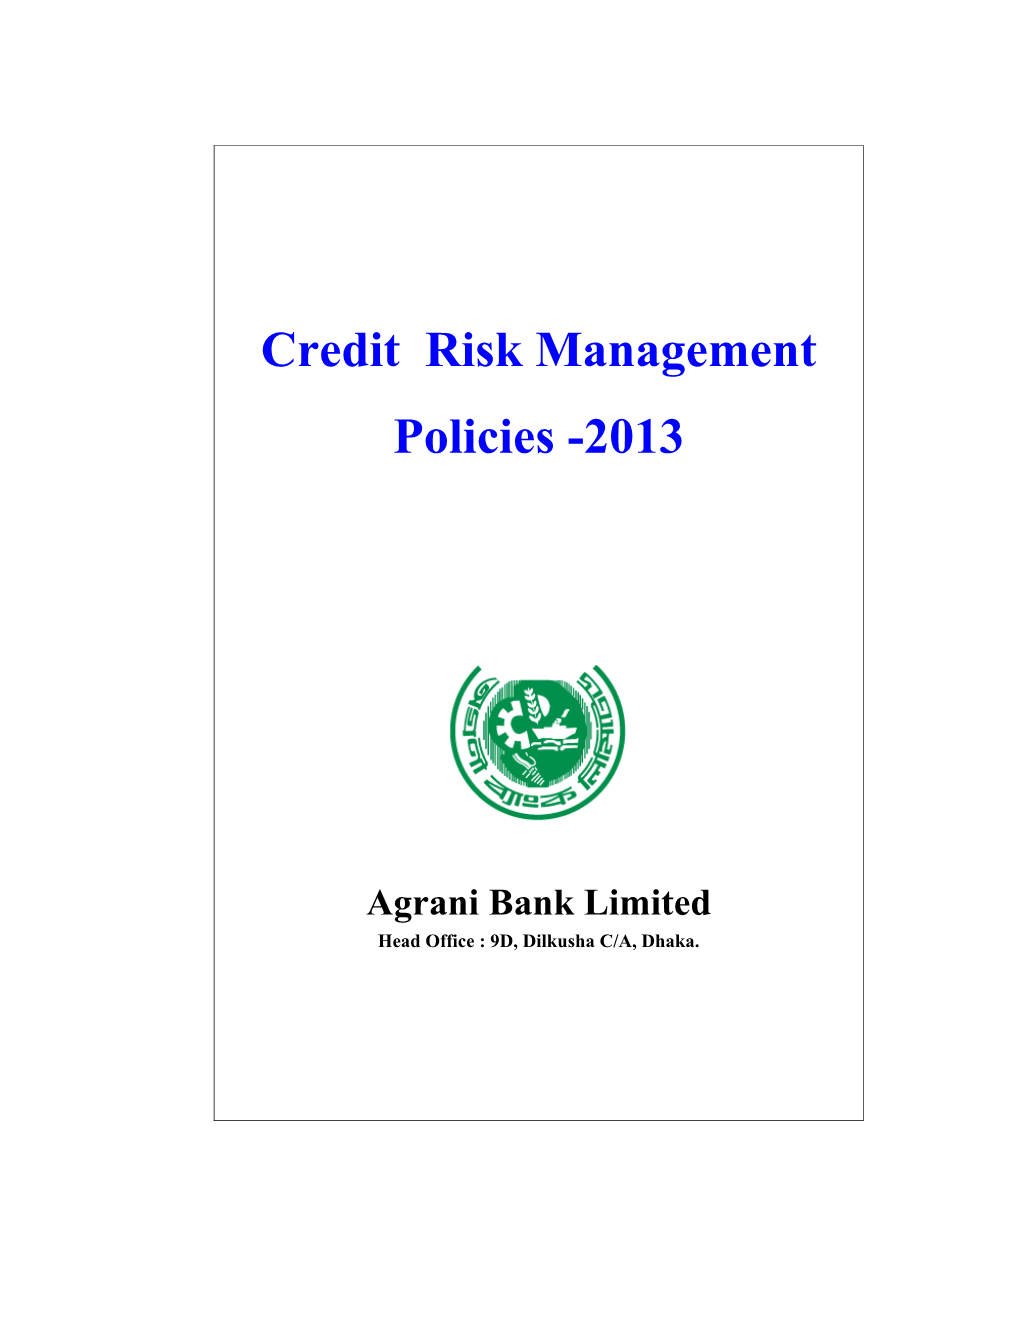 Credit Risk Management Policies -2013